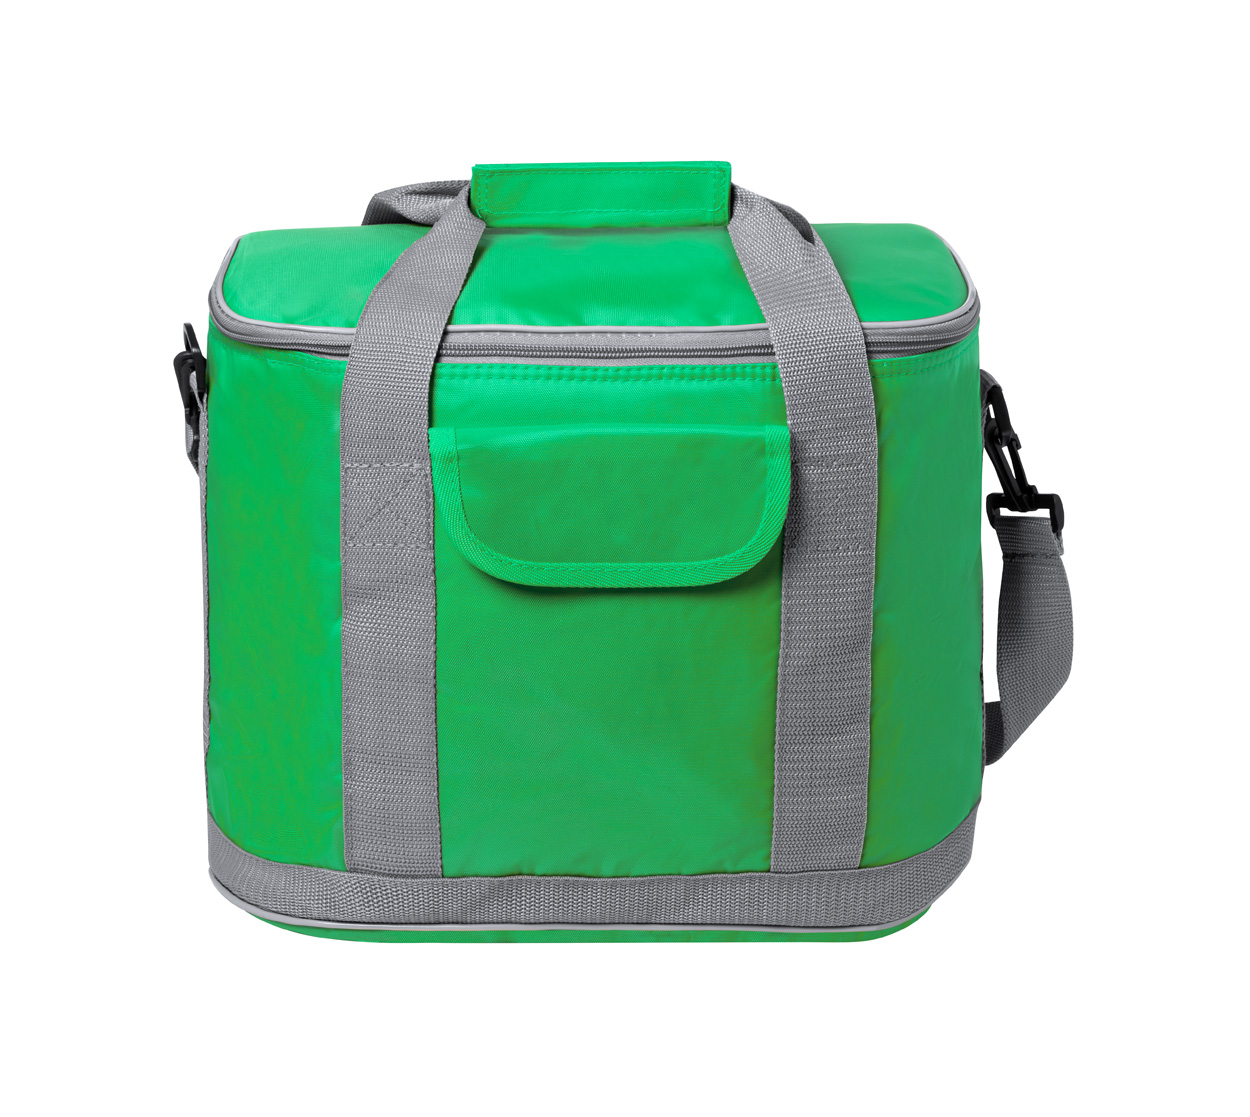 Sindy cooler bag - green